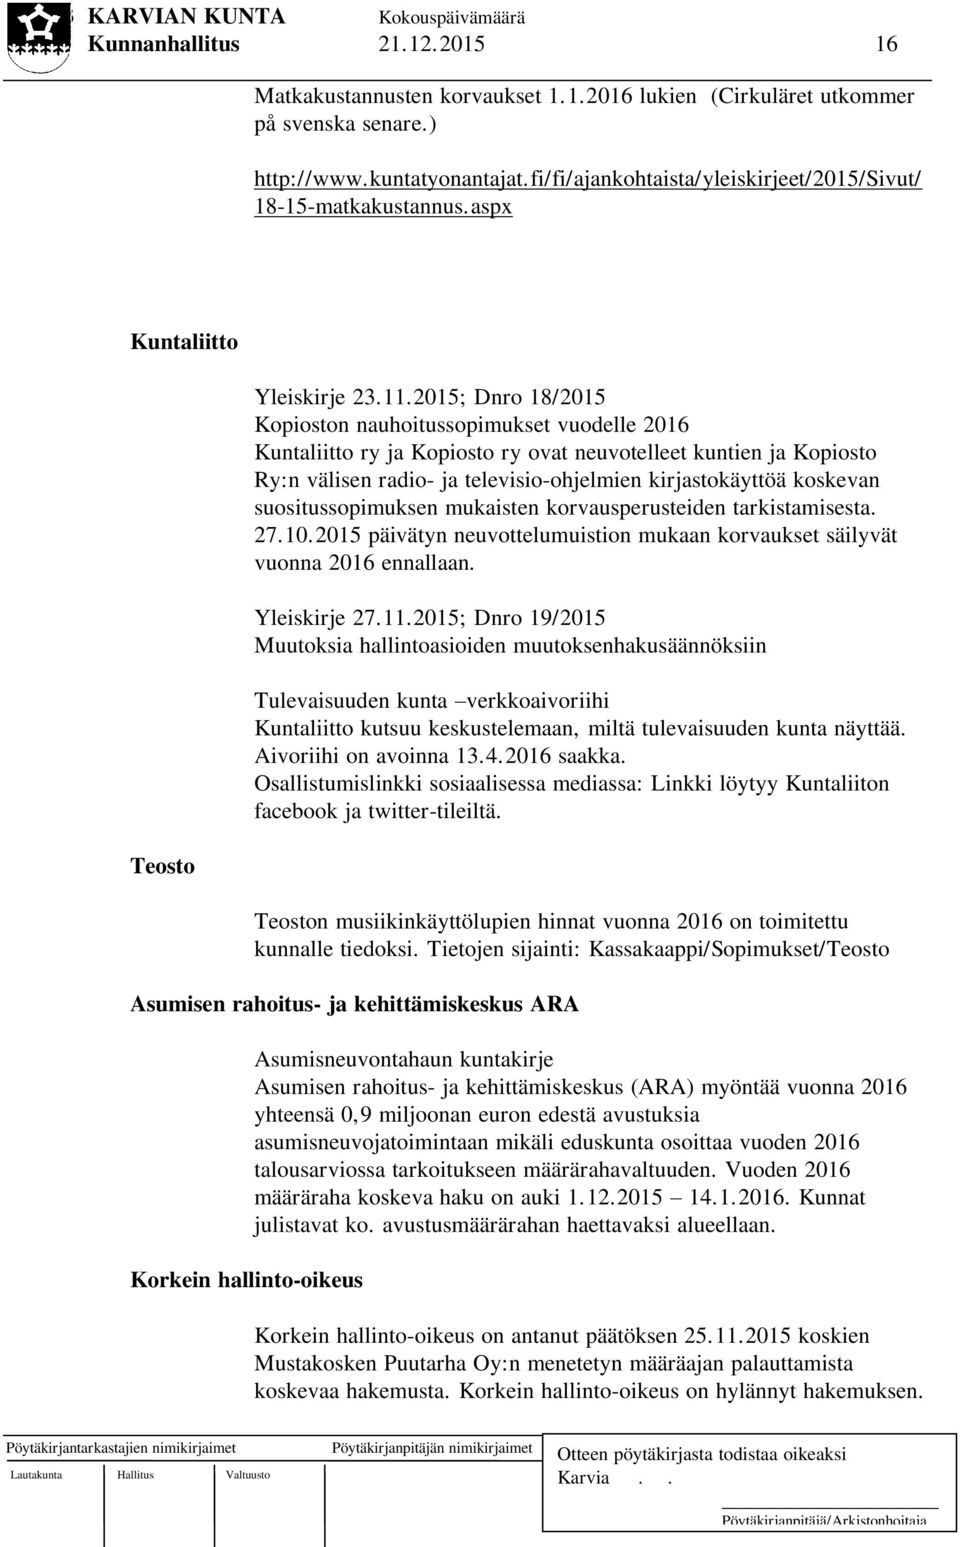 2015; Dnro 18/2015 Kopioston nauhoitussopimukset vuodelle 2016 Kuntaliitto ry ja Kopiosto ry ovat neuvotelleet kuntien ja Kopiosto Ry:n välisen radio- ja televisio-ohjelmien kirjastokäyttöä koskevan